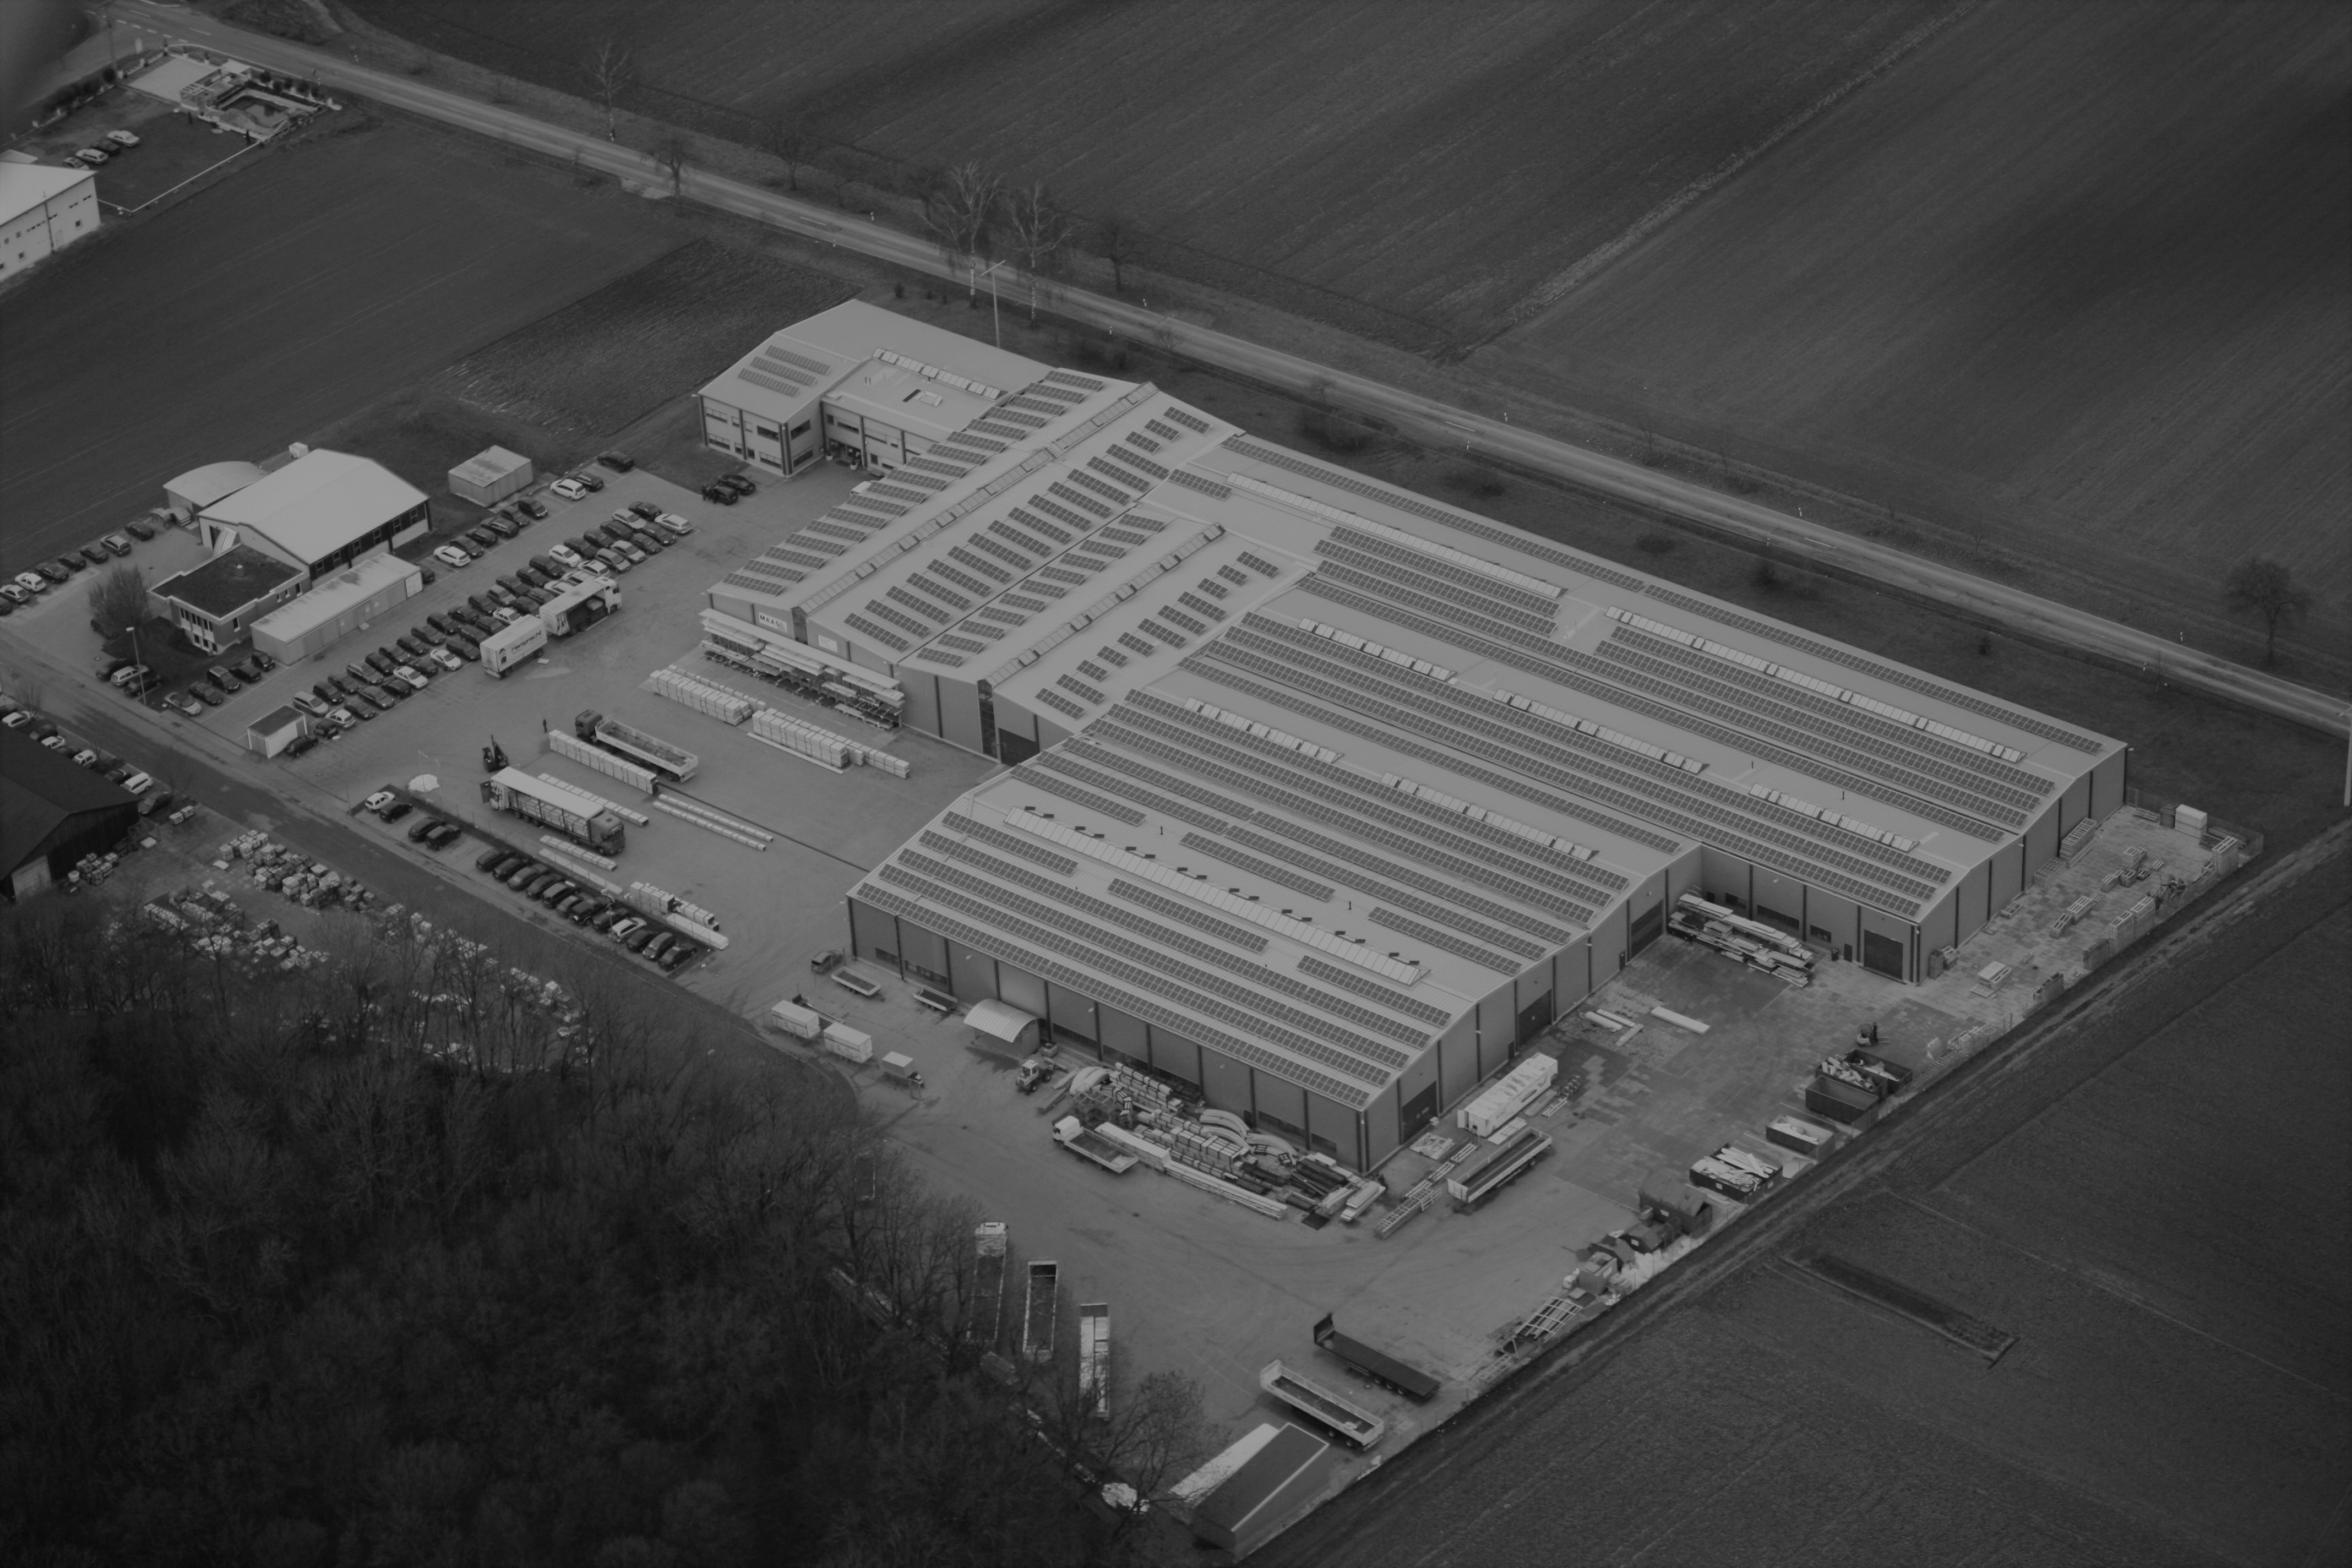 Luftbild der Firma Maas in schwarz/weiß